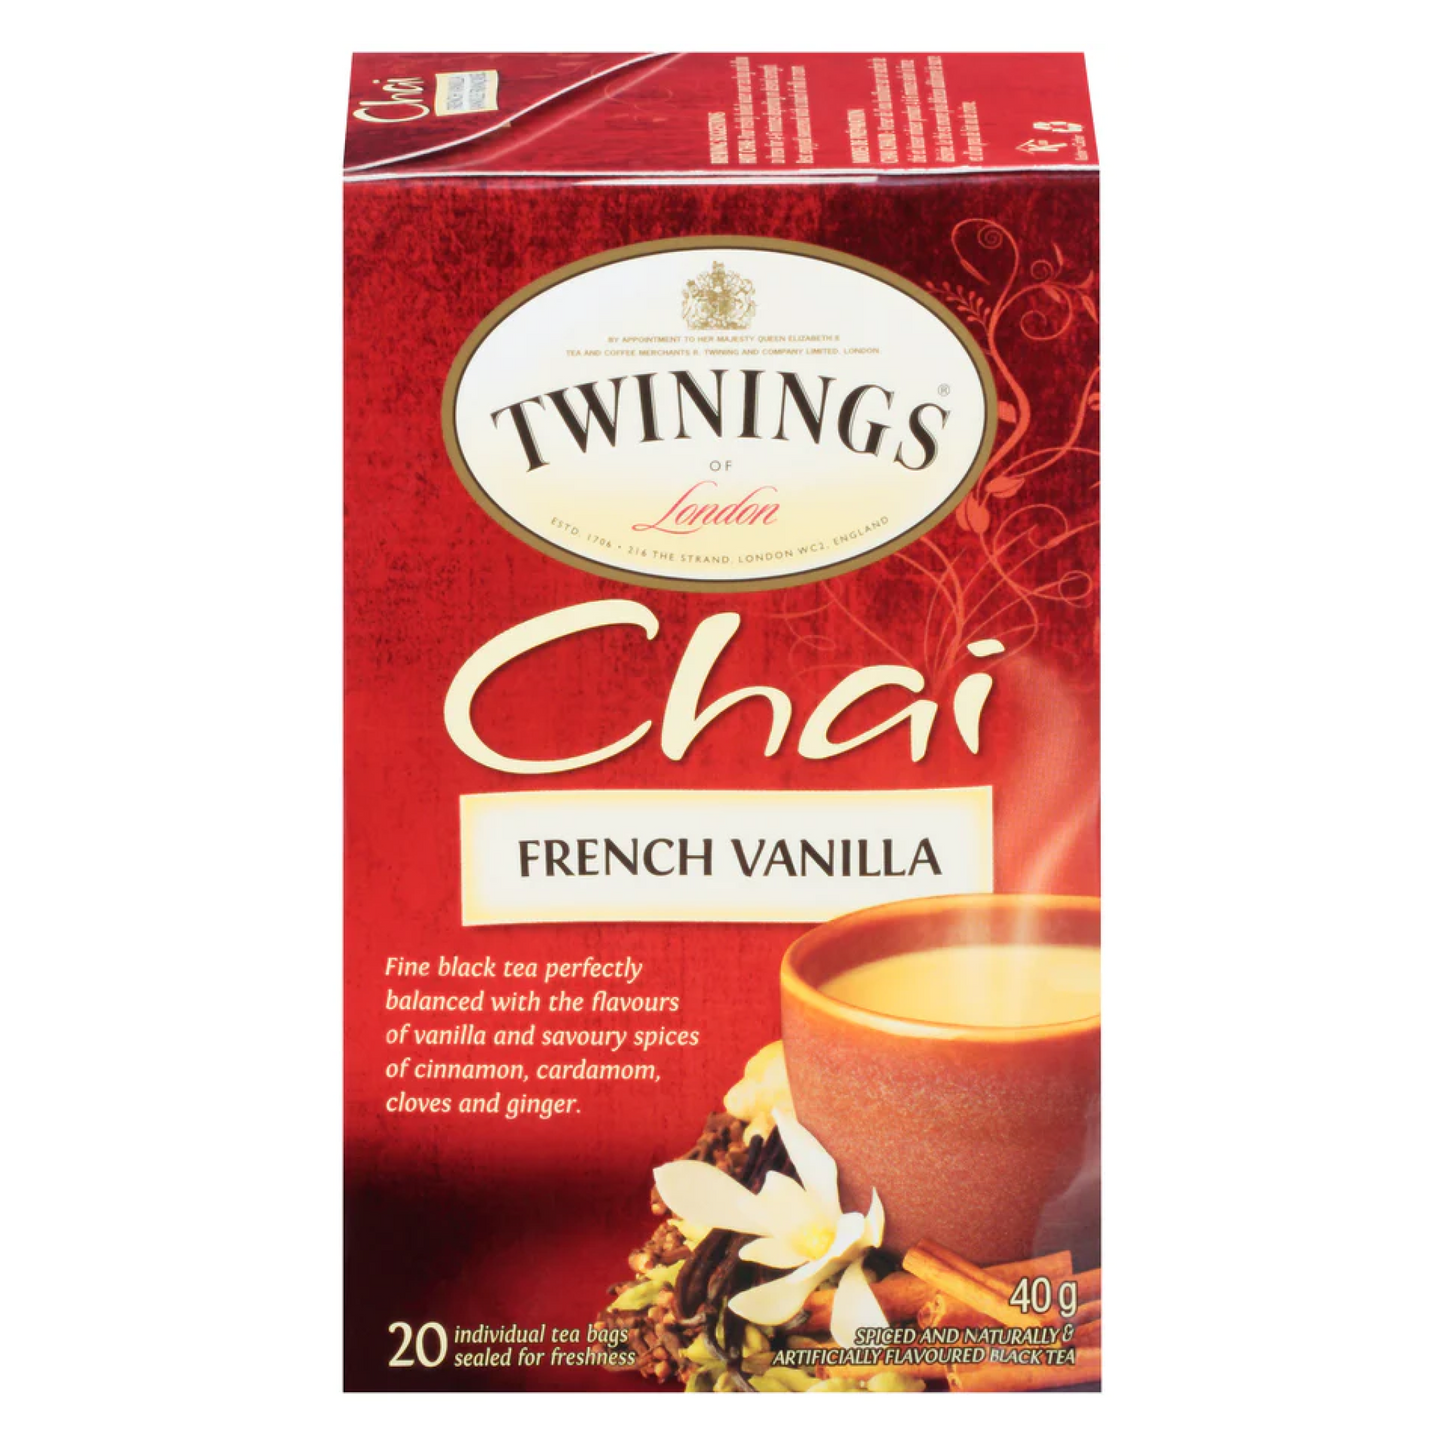 Twinings French Vanilla Chai 40g